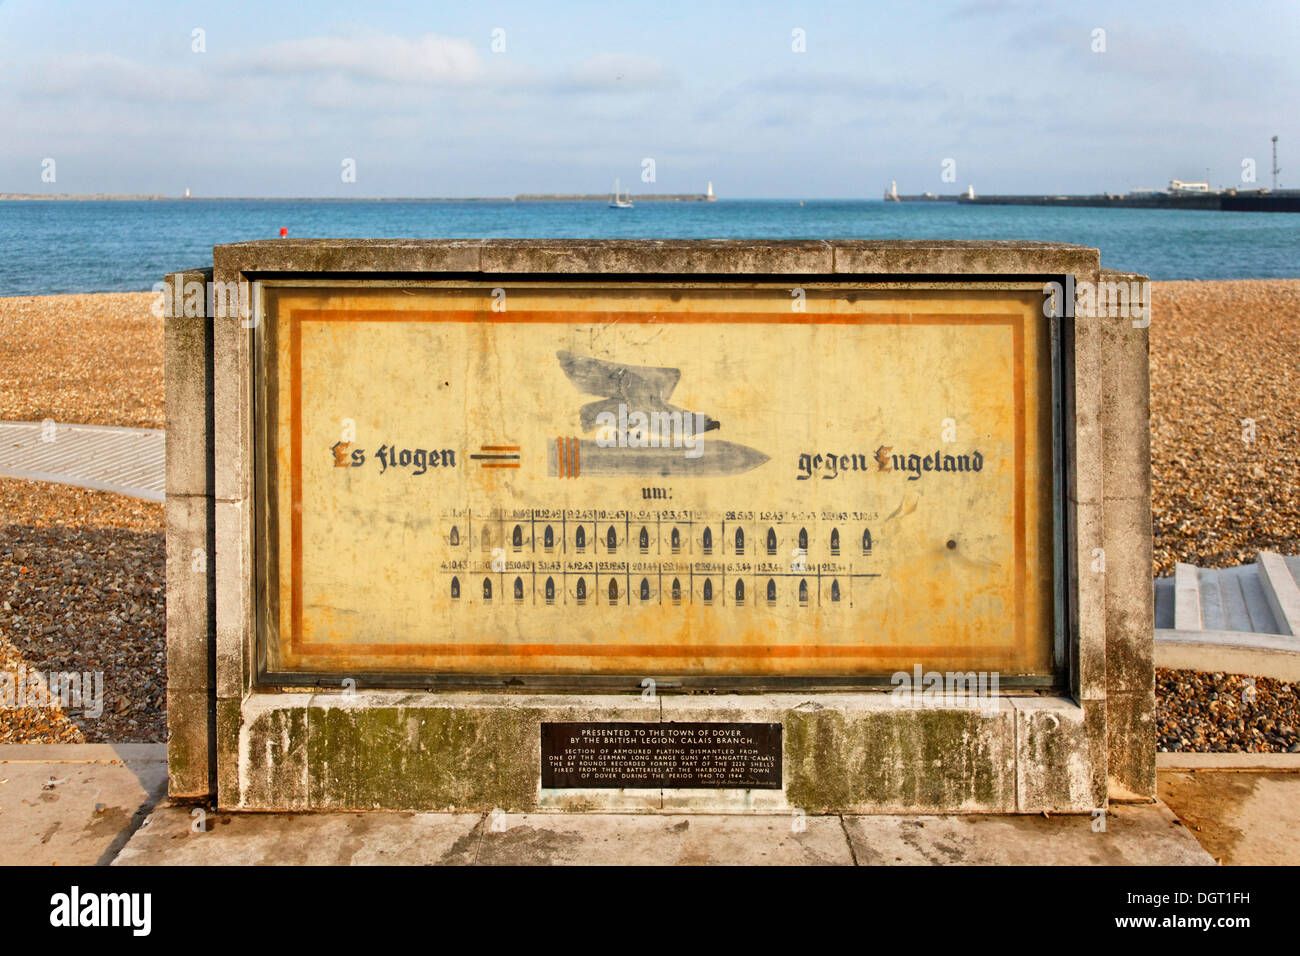 Monument commémoratif de guerre à Port Dover, Angleterre du Sud-Est, de l'administration du comté de Kent, Angleterre, Royaume-Uni, Europe Banque D'Images